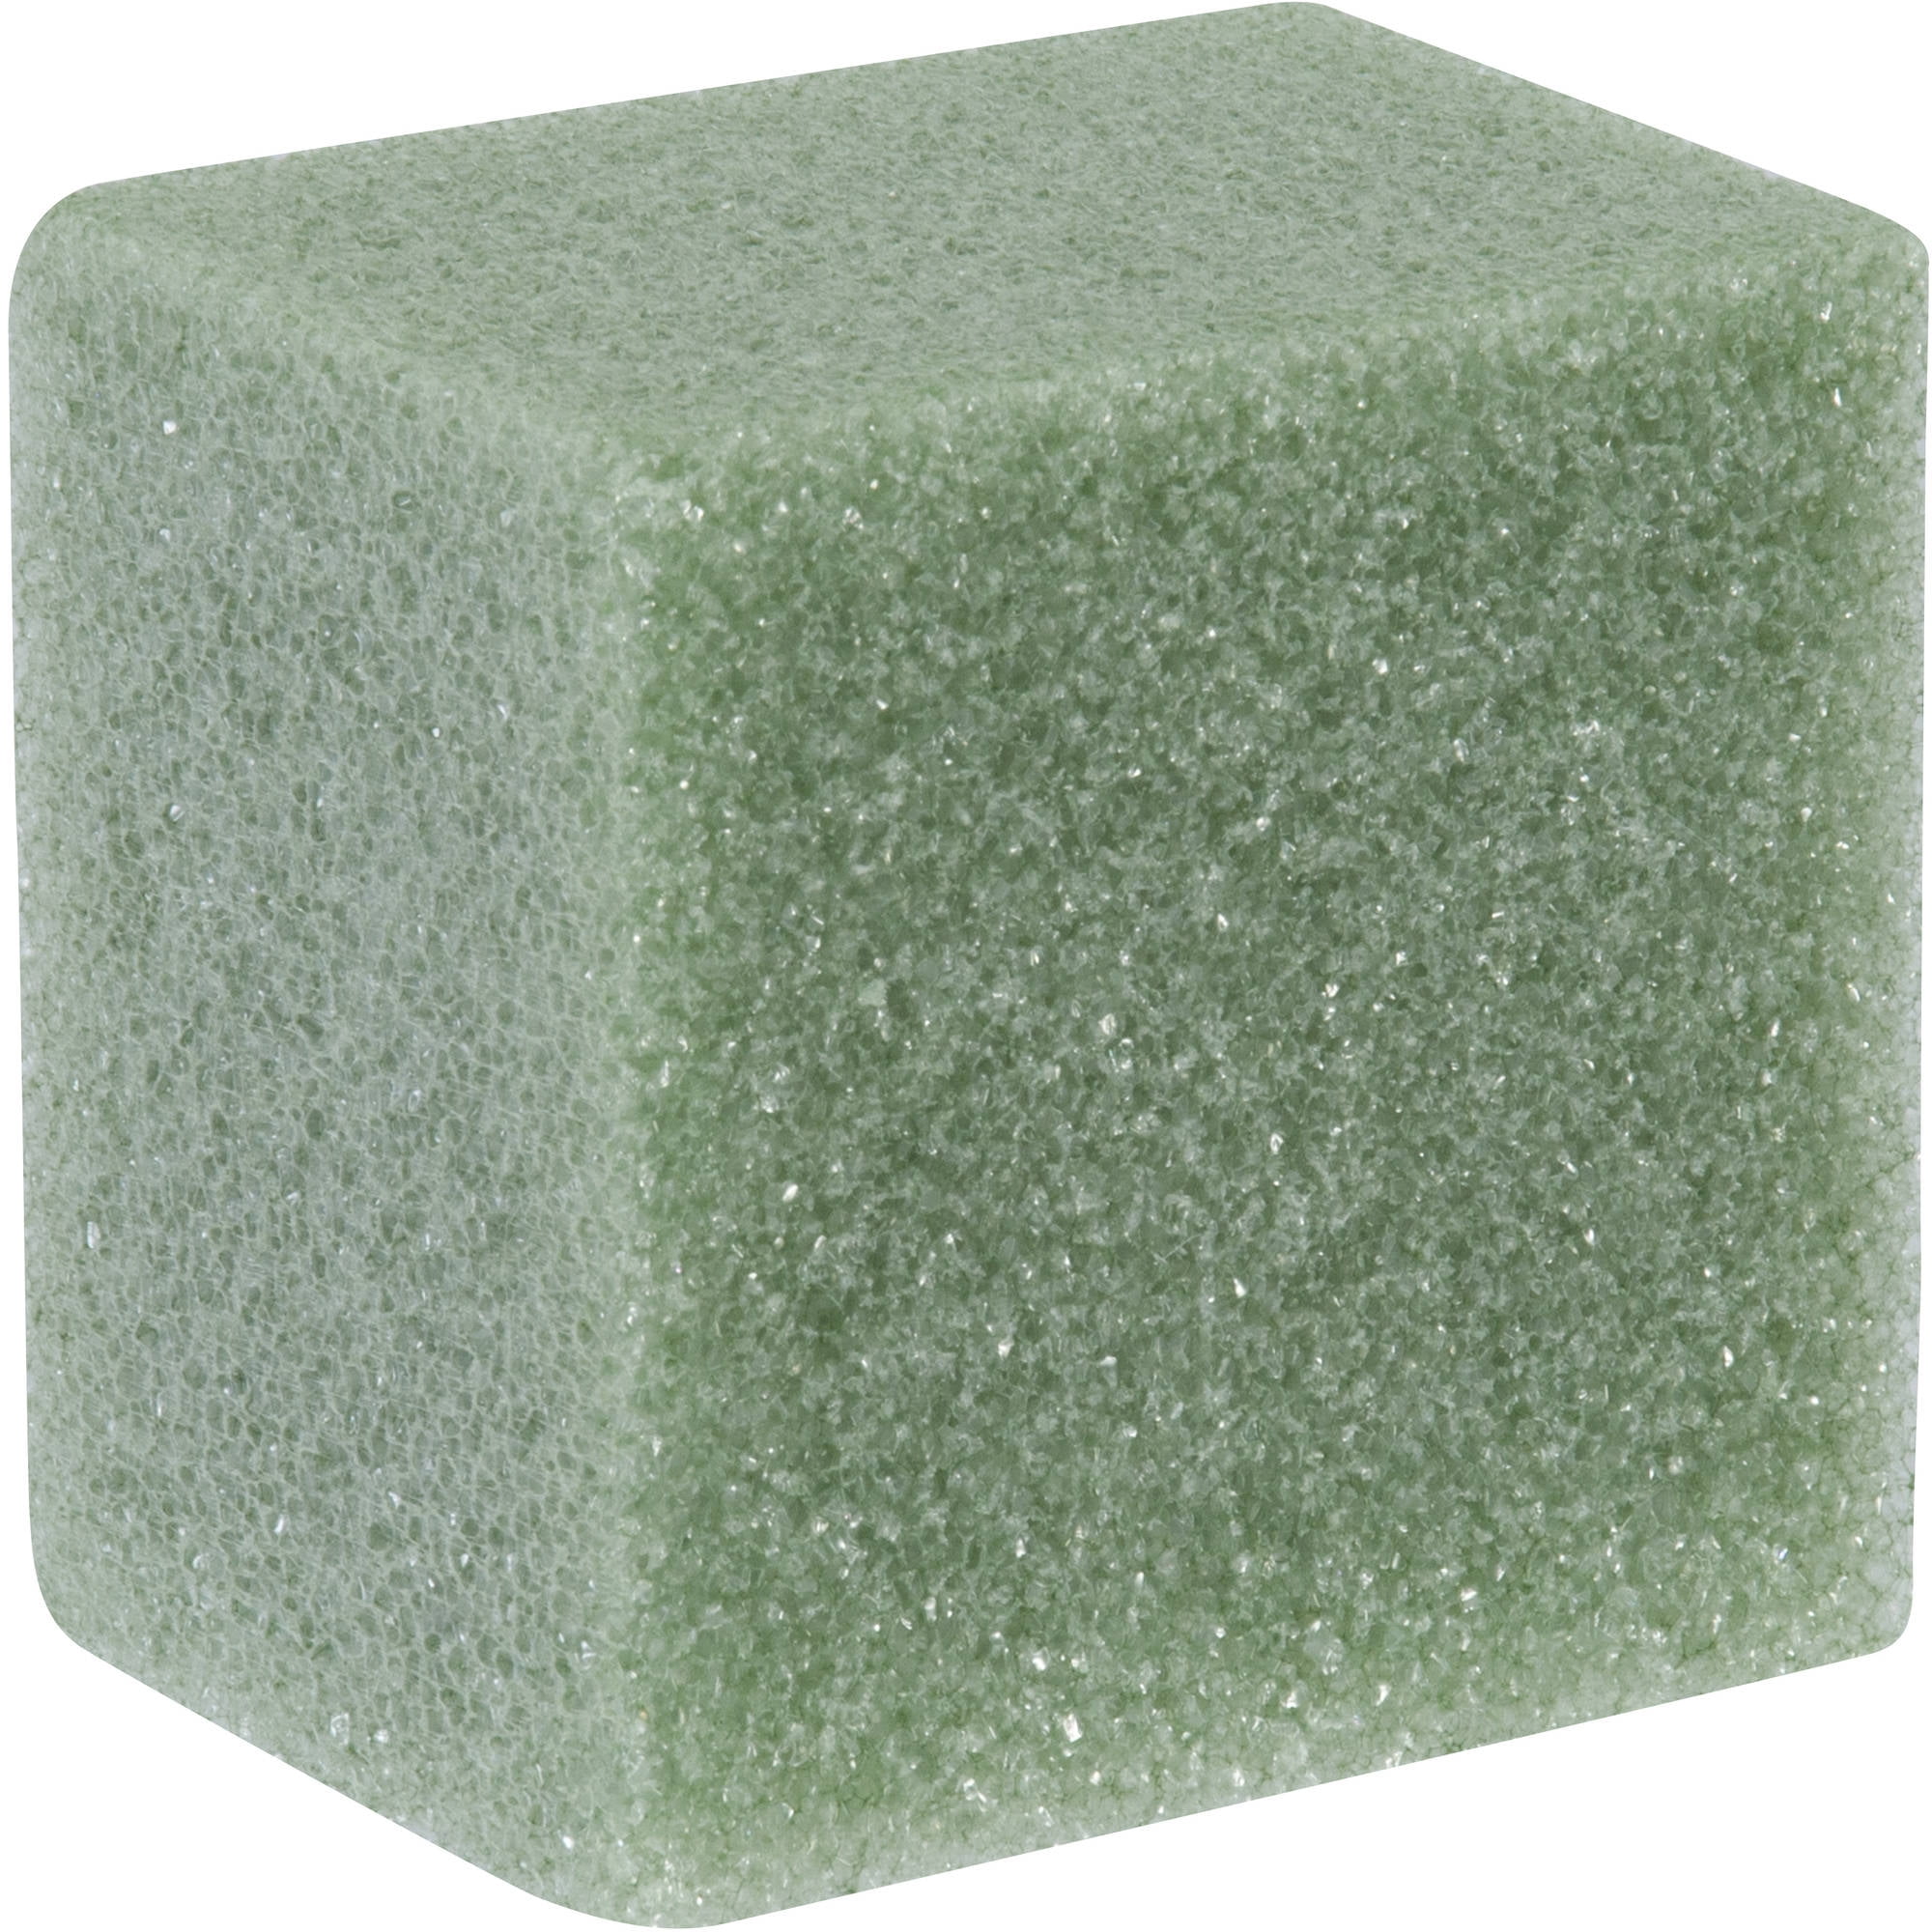 Foam Blocks (3 x 3 x 0.75 thick) - Stagestep